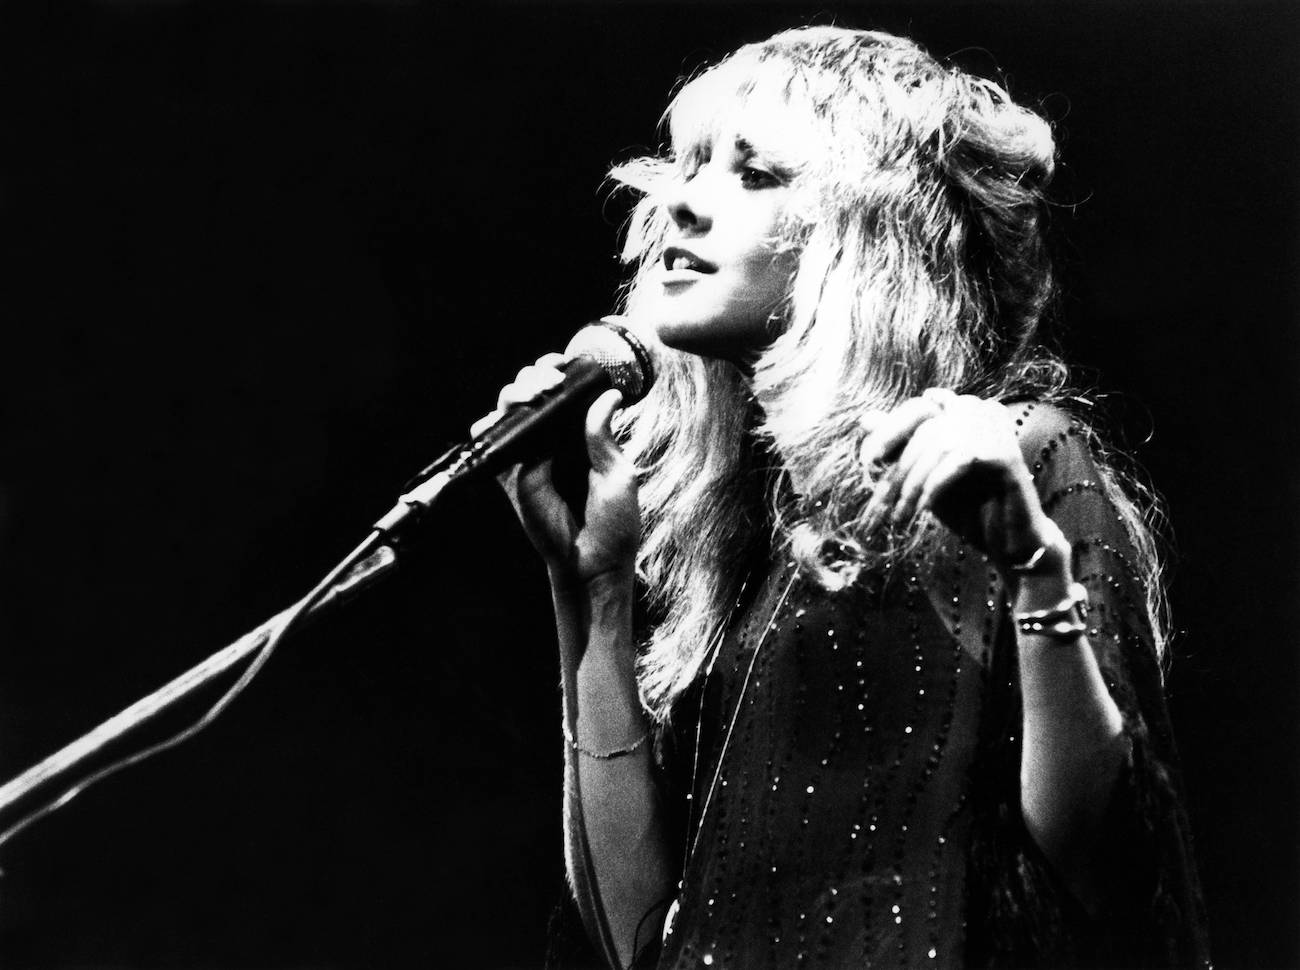 Stevie Nicks in black performing with Fleetwood Mac in 1977.